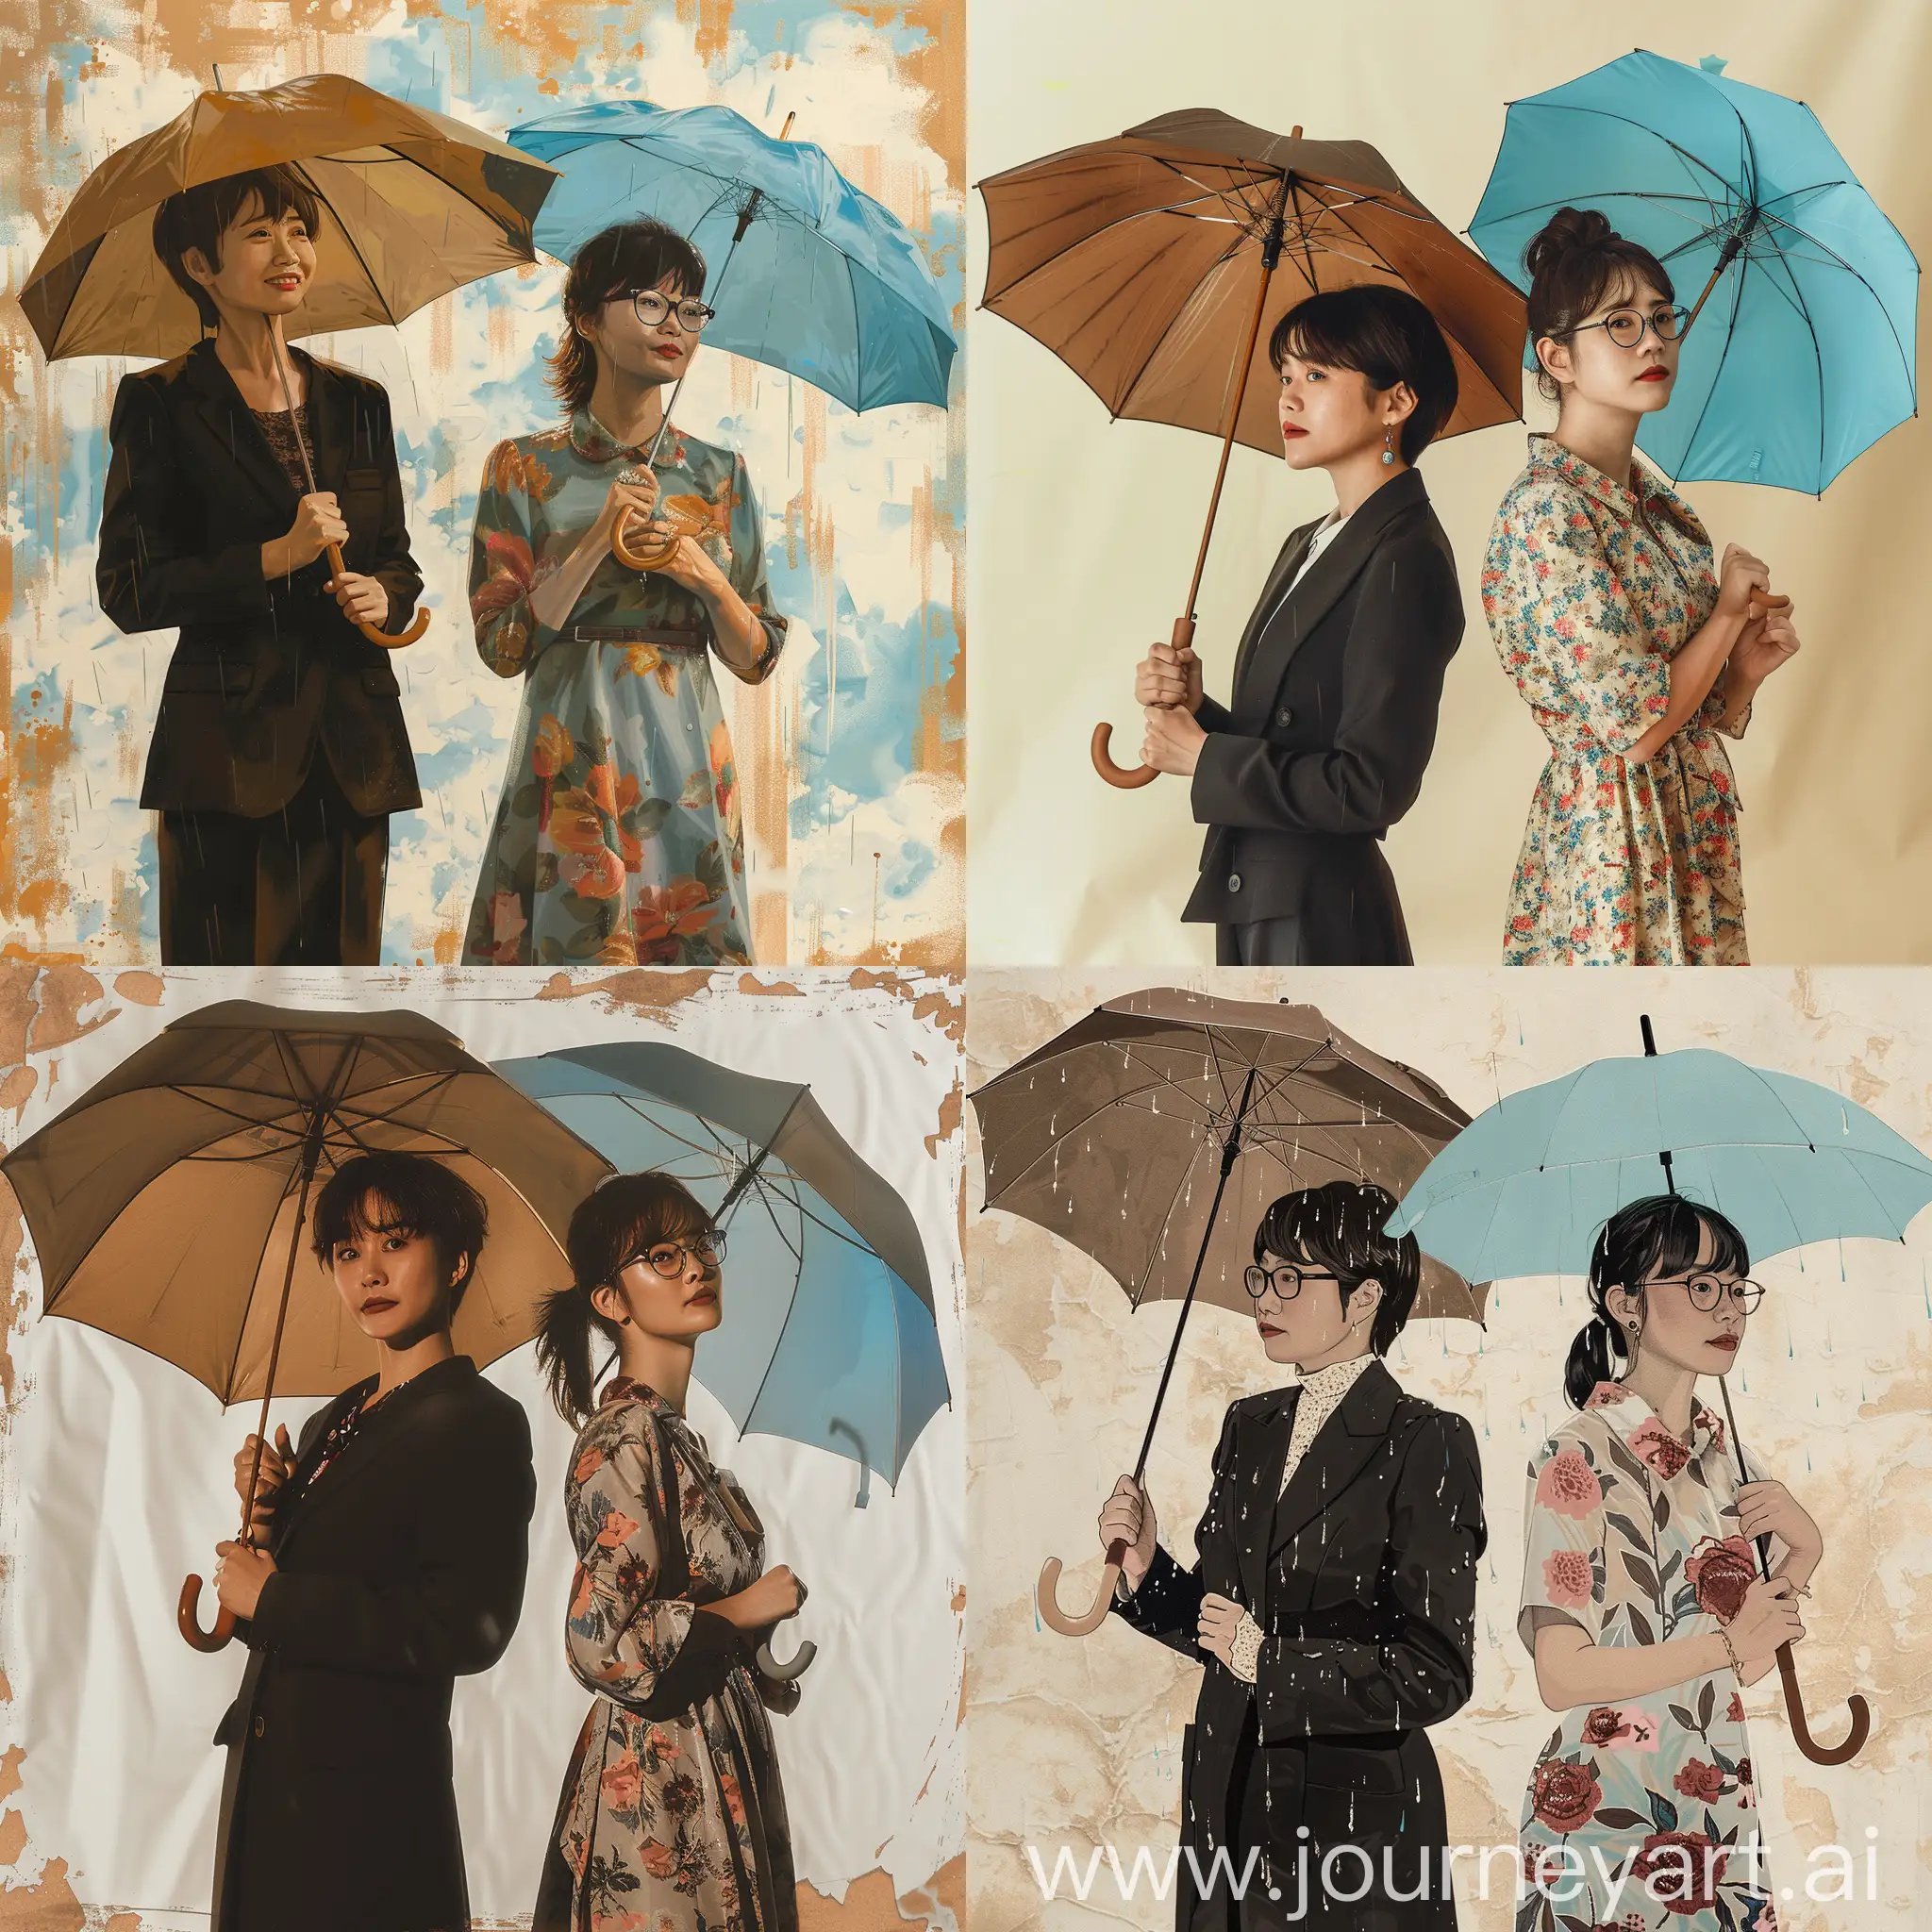 两名亚洲妇女在微雨中撑伞。左边的45岁，短发，女式黑色西装，伞是褐色的。右边的20岁，马尾辫，戴眼镜，穿碎花裙子，伞是天蓝色的。